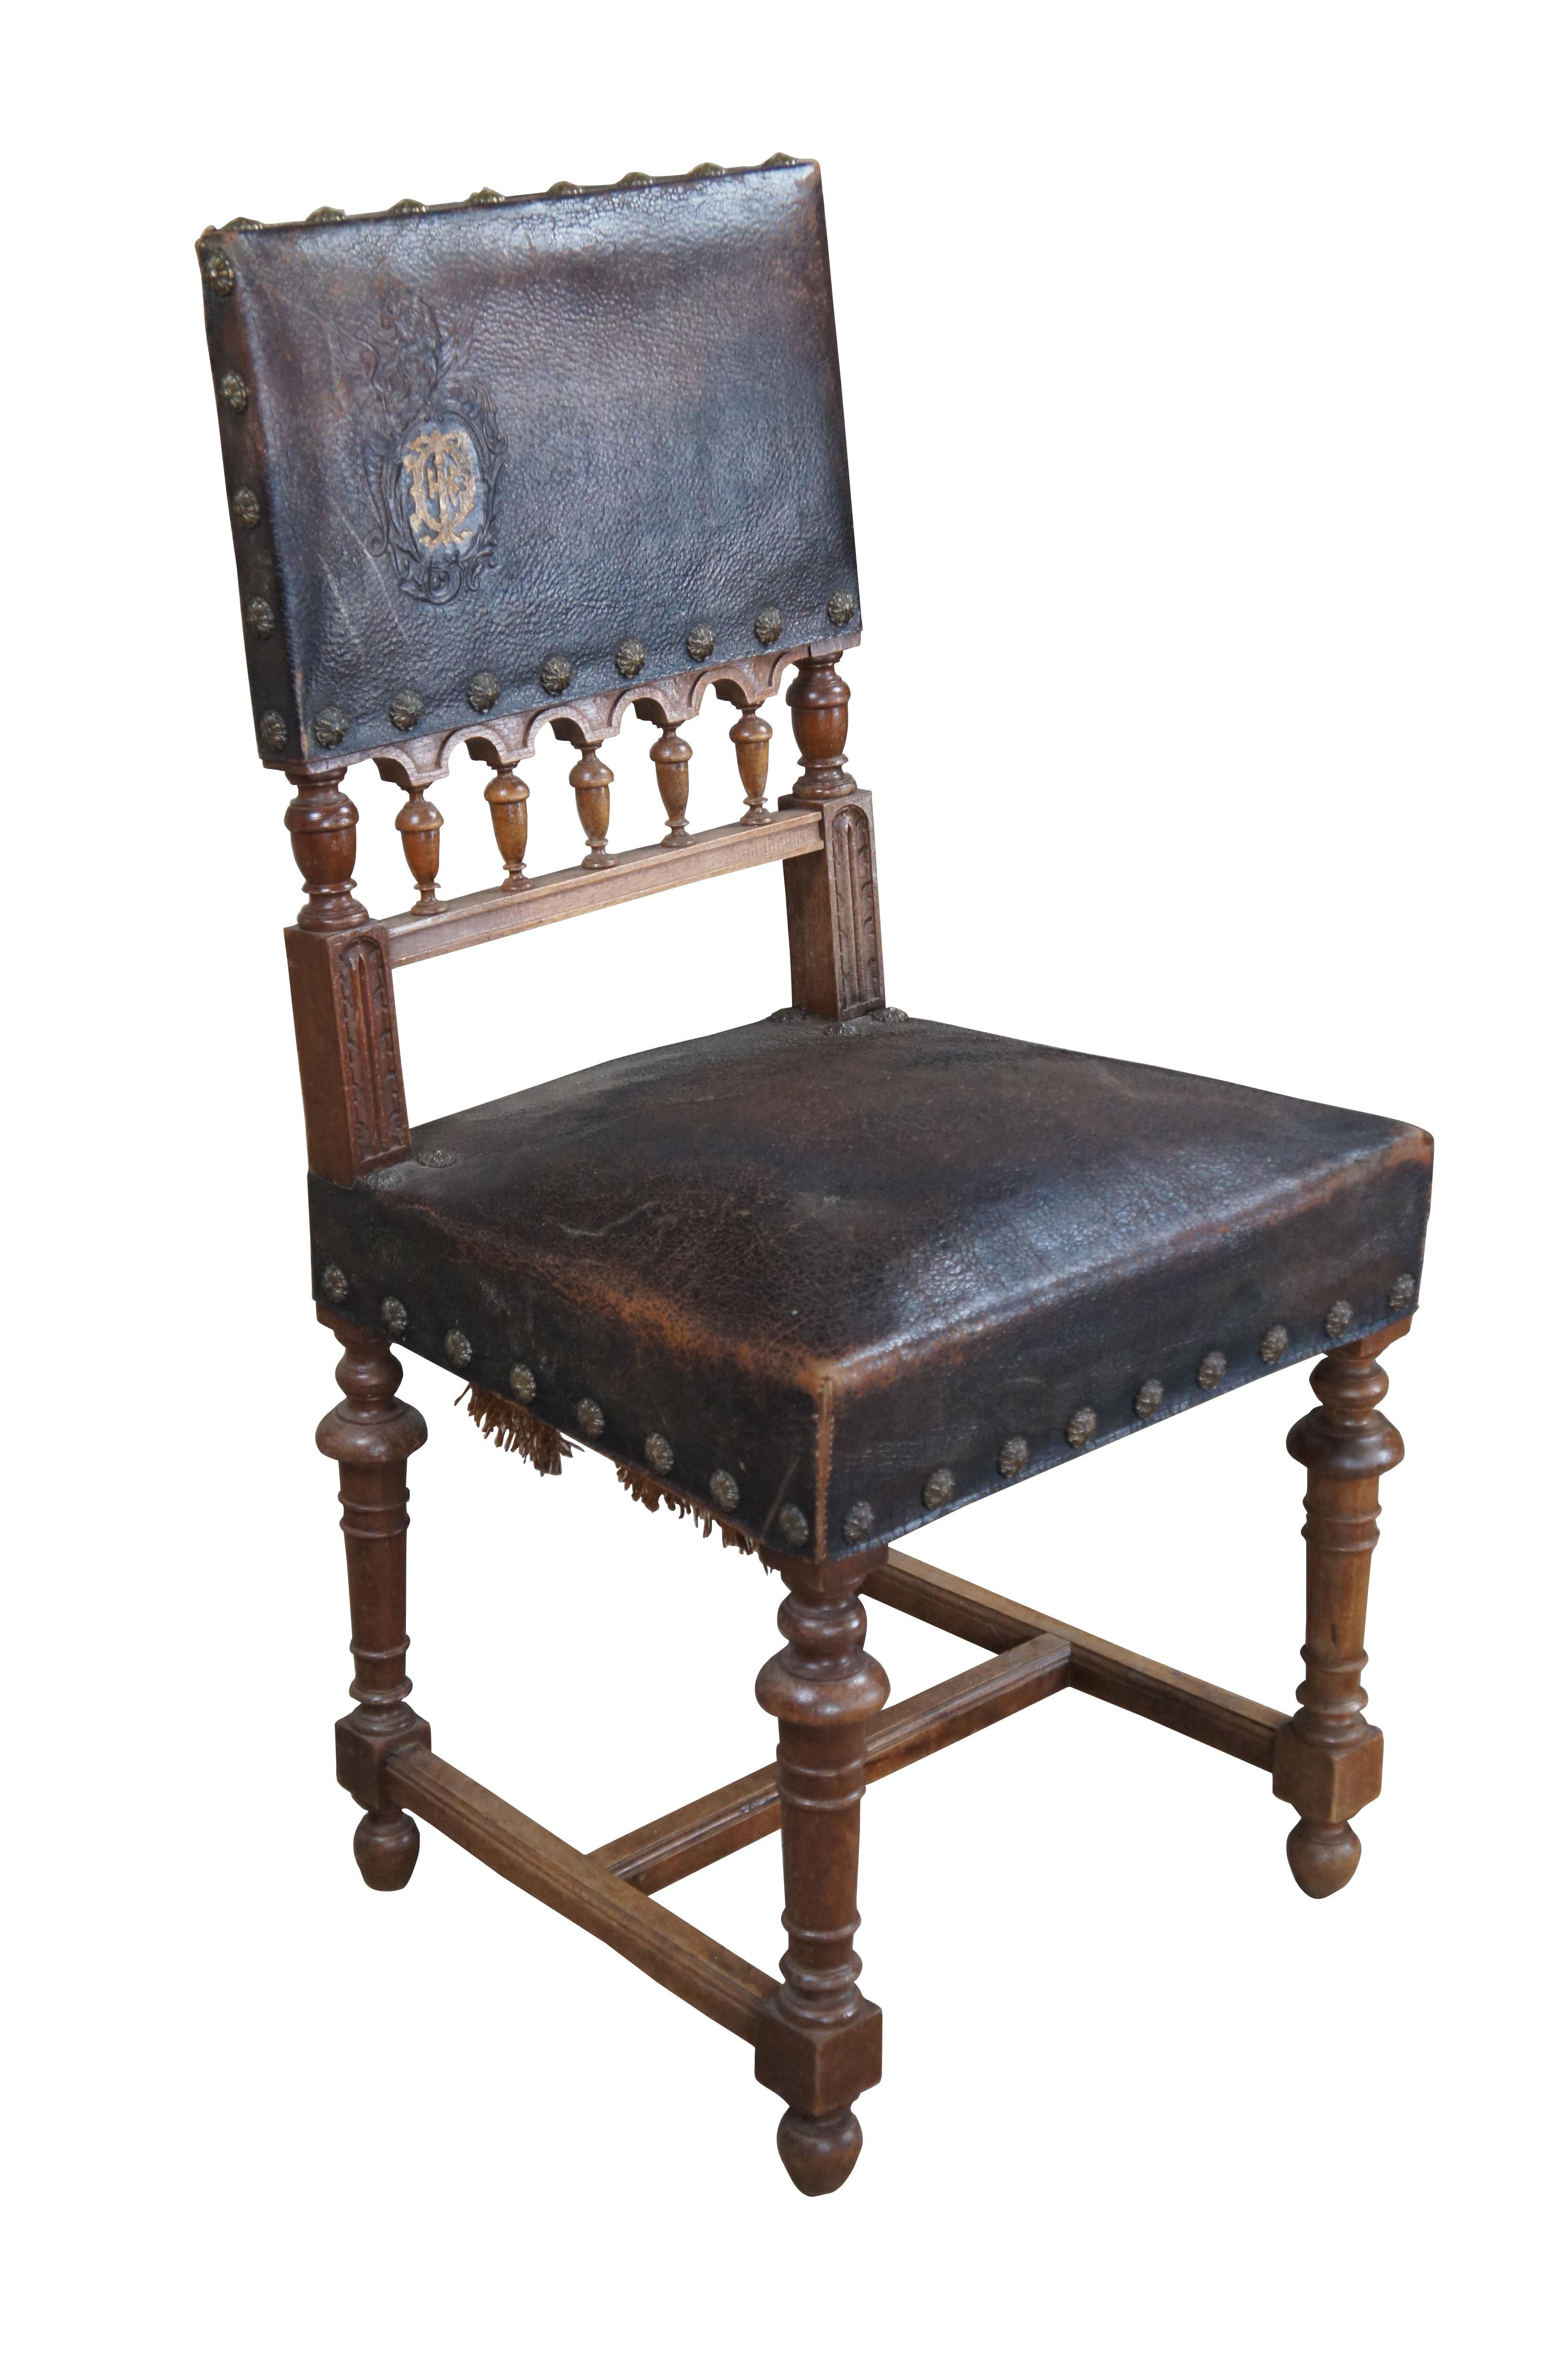 Ancienne chaise latérale de salle à manger de style HENRY II, vers les années 1880. Fabriqué en noyer avec un dos en cuir gaufré représentant un écusson et un griffon ailé. Le bas du dossier de la chaise est orné d'une arvade sculptée et de fleurons